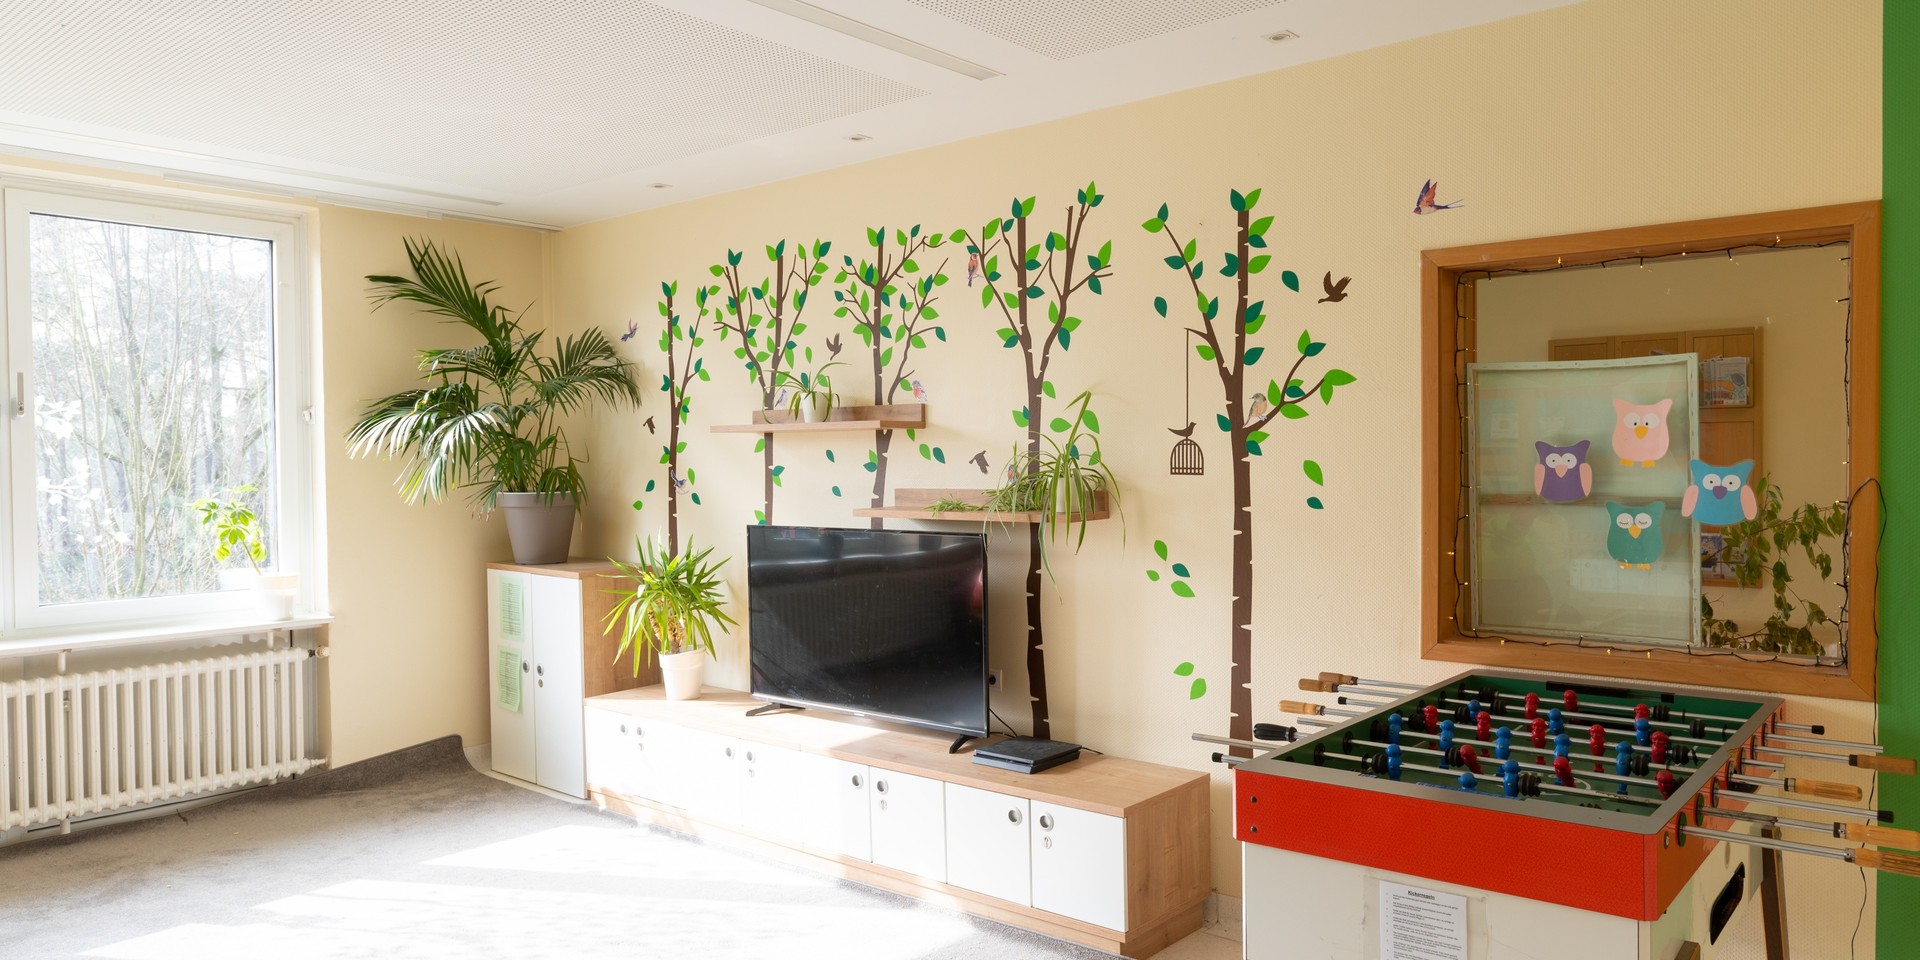 In dem Aufenthaltsraum stehen ein Kickertisch, ein Fernseher und eine Pflanze. Die Wände werden von Wandbildern geschmückt, die Bäume und Vögel zeigen